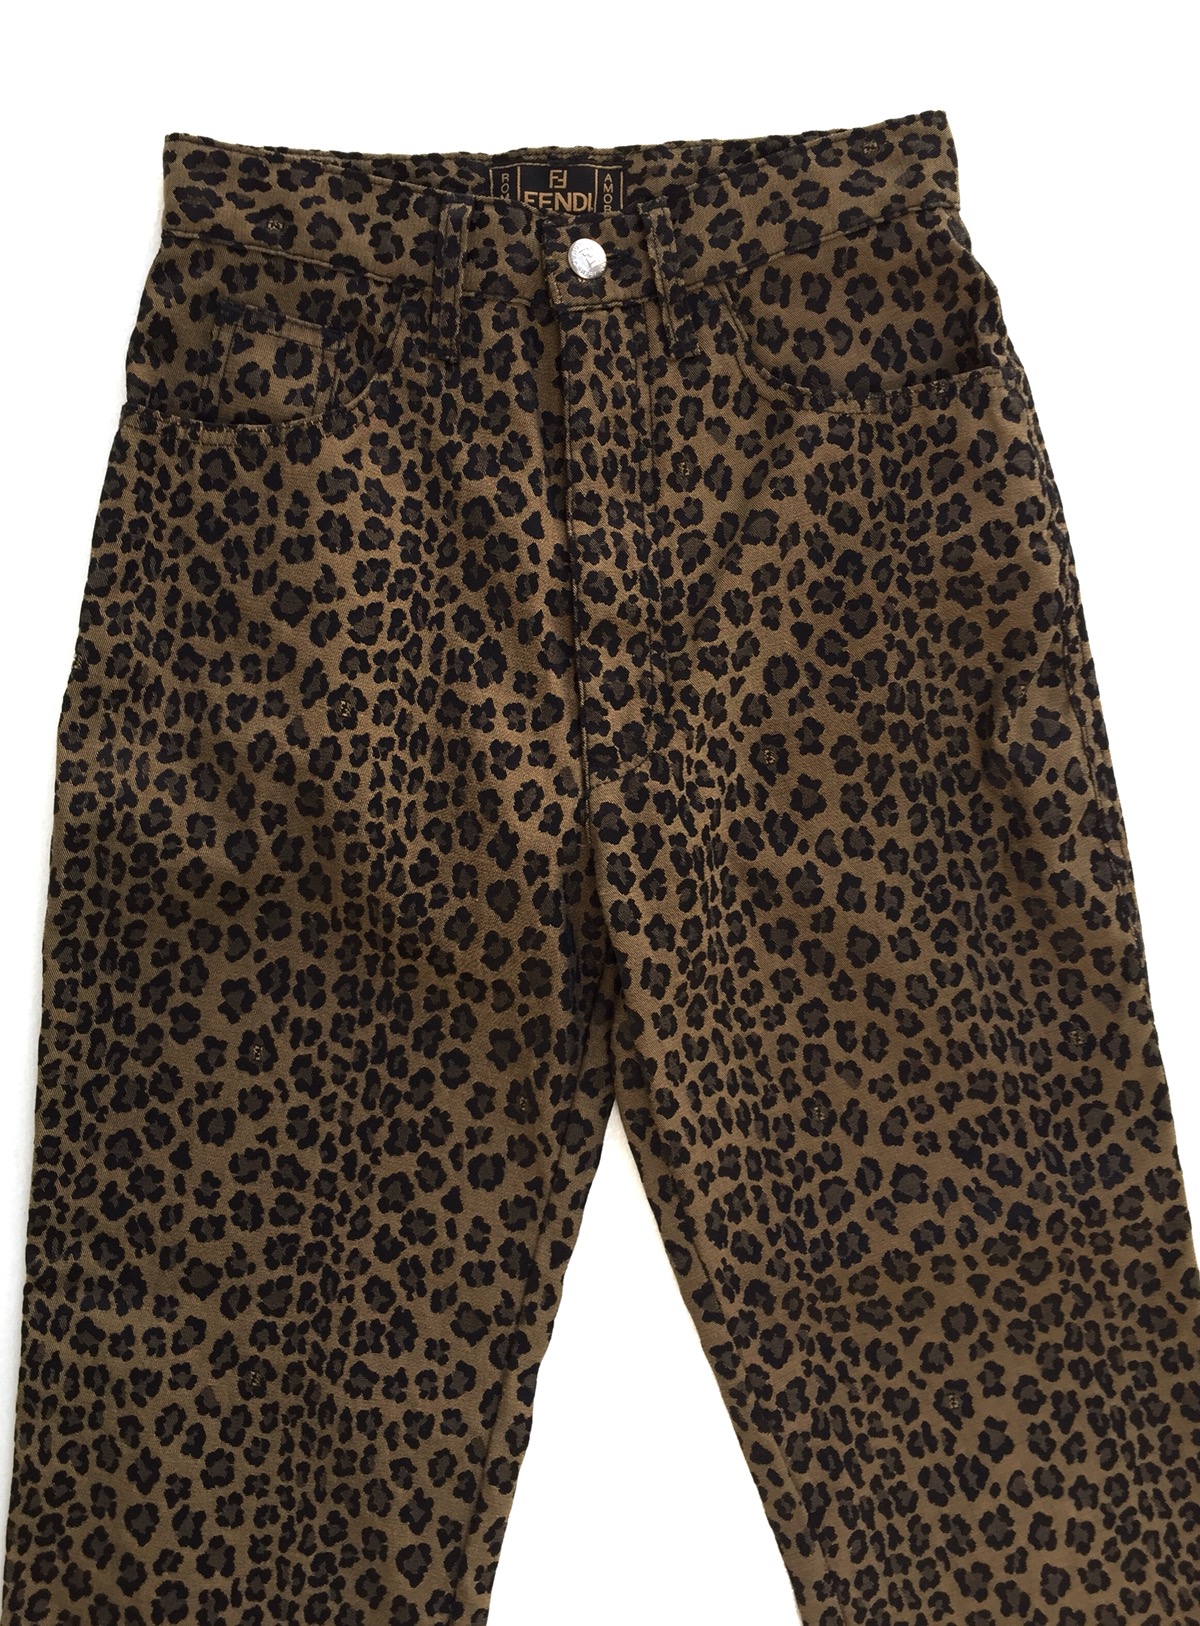 Vintage Authentic Fendi Leopard Pants - 3